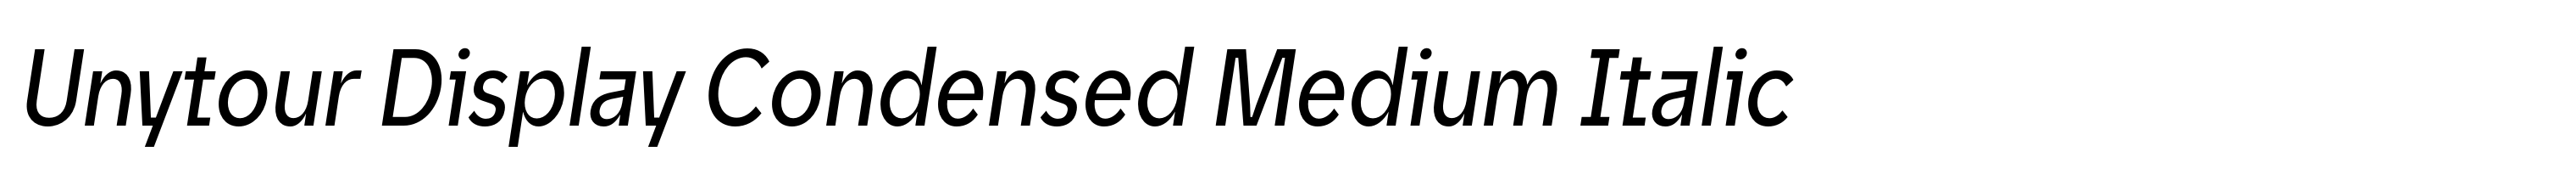 Unytour Display Condensed Medium Italic